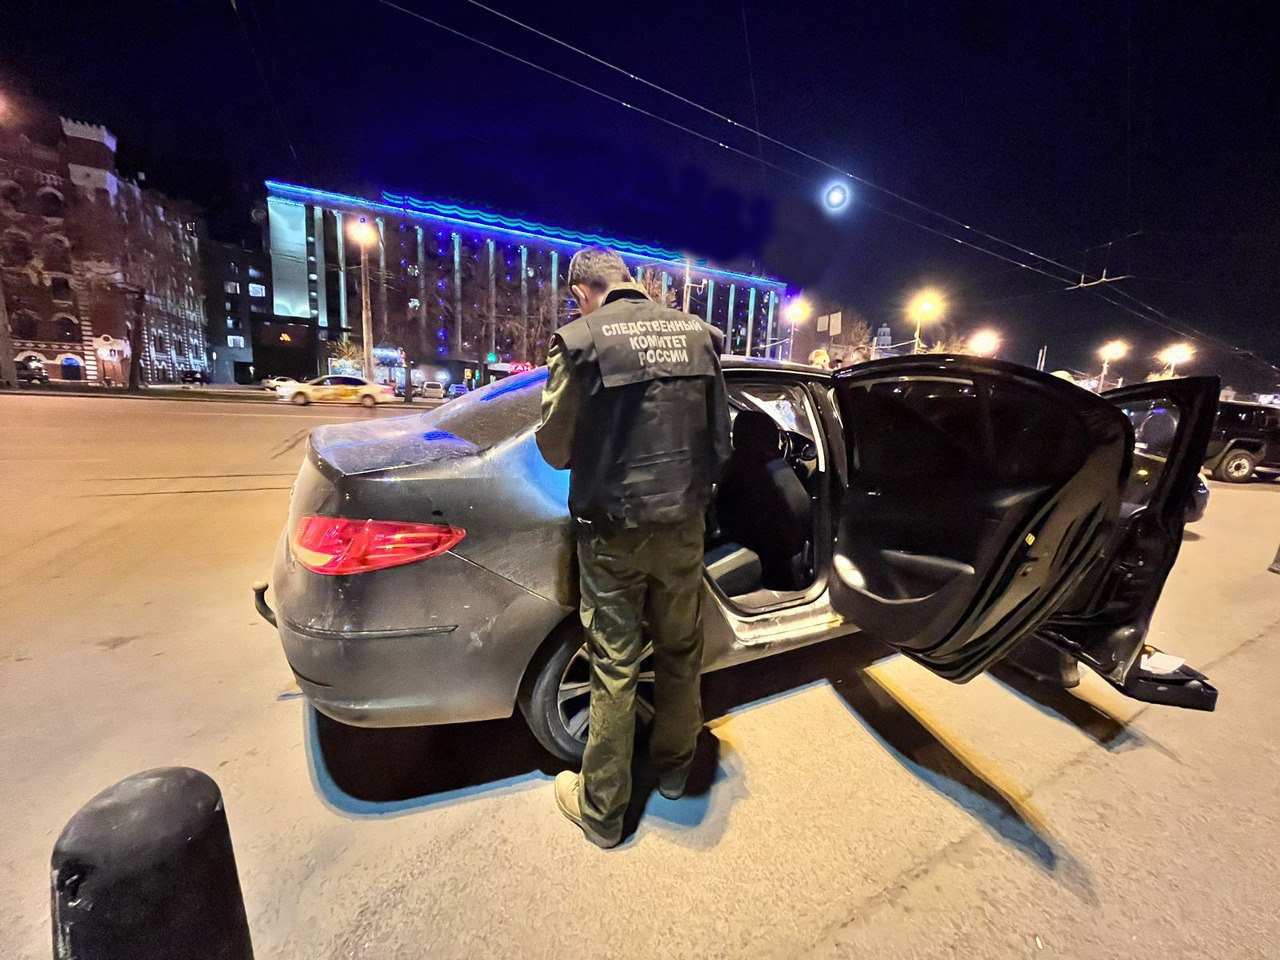 У ж/д вокзала в Екатеринбурге застрелили мужчину. Следователи раскрыли детали убийства